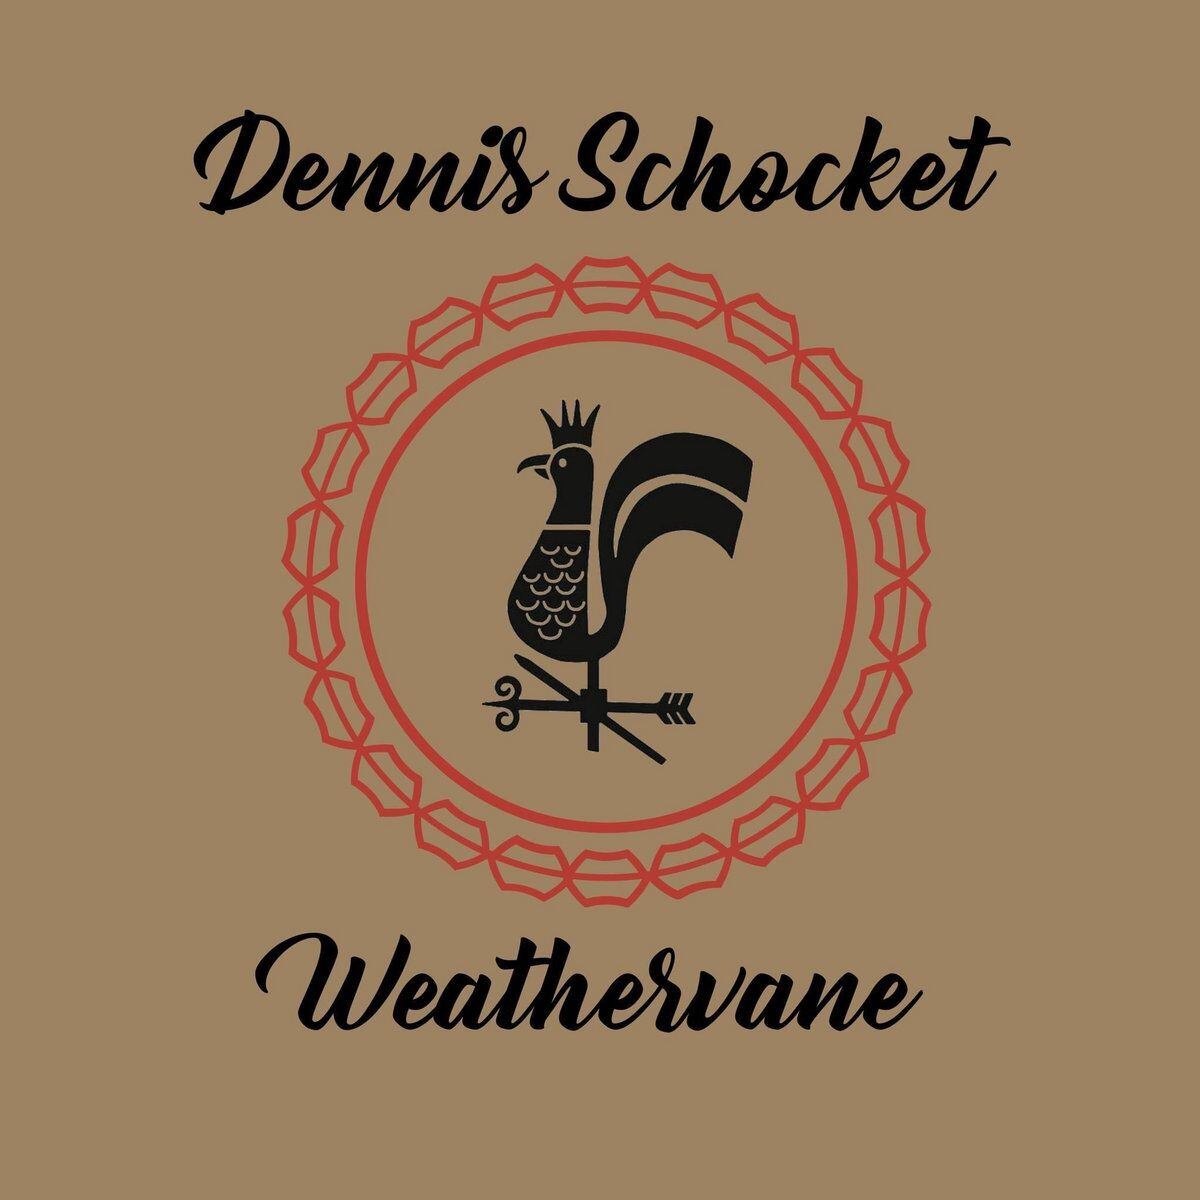 Portada de ‘Weathervane’, de Dennis Schocket. 